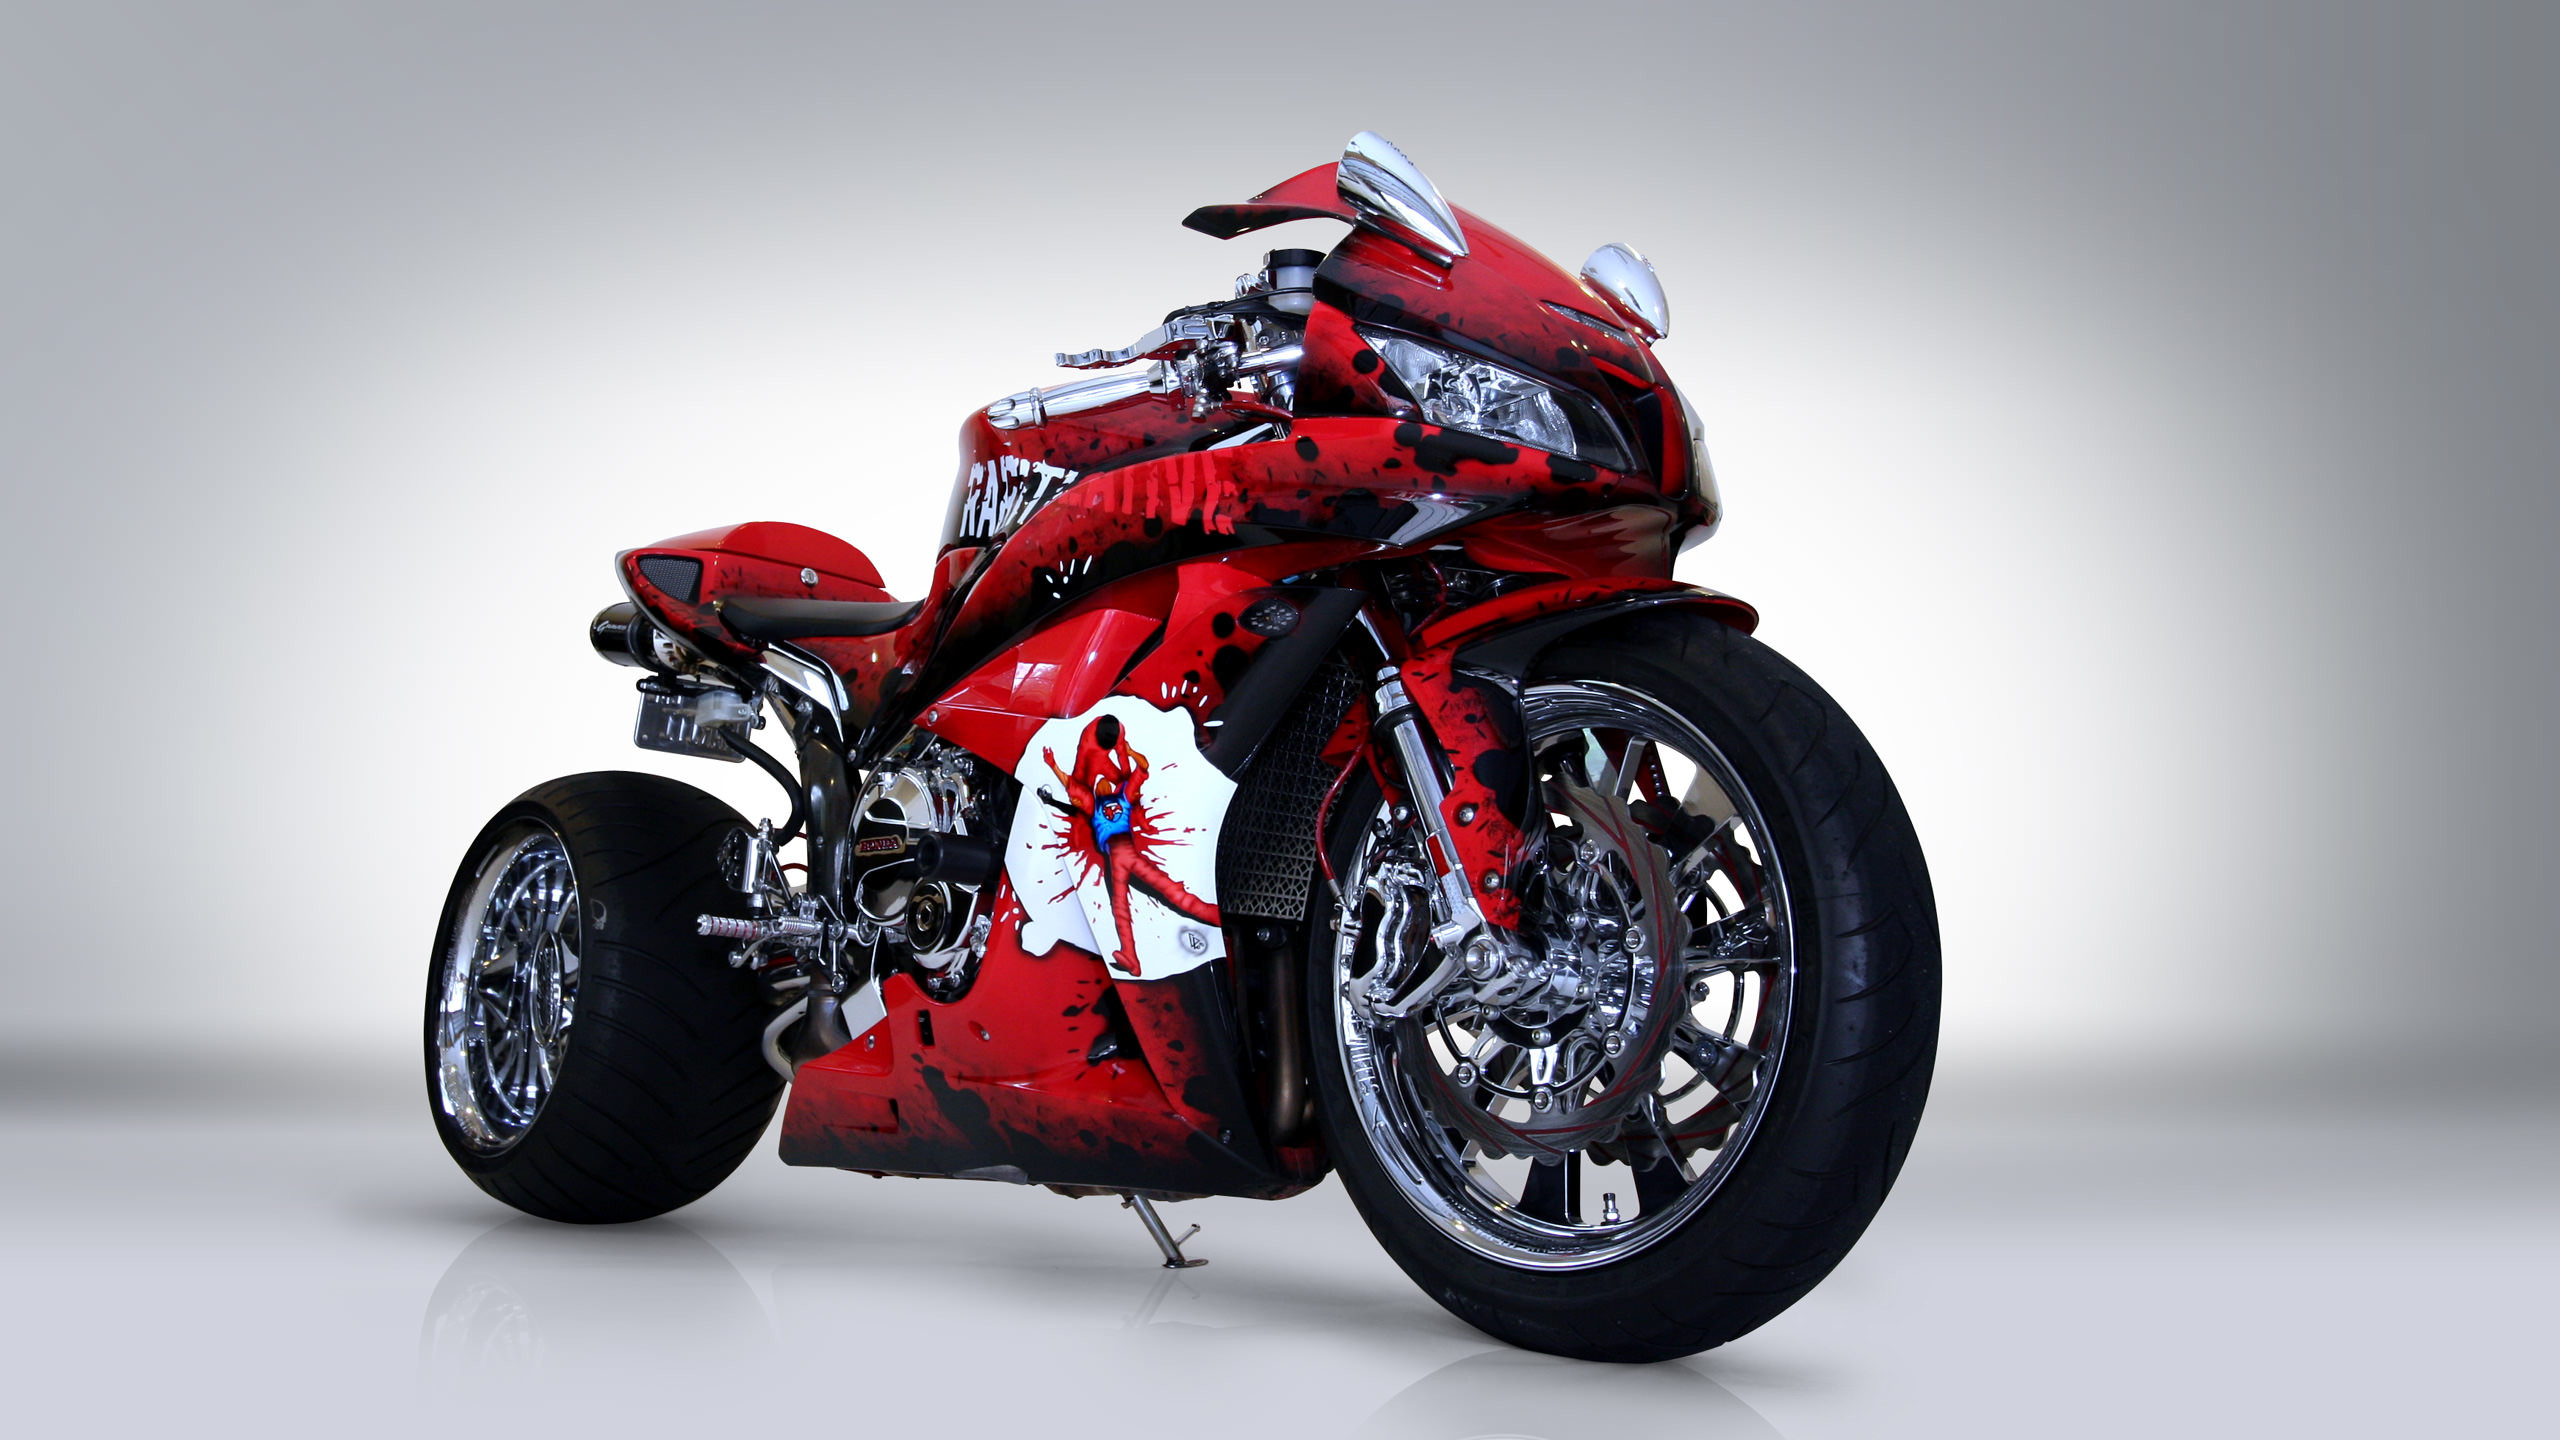 2560x1440 Honda CBR600RR 2016 Motorcycle Wallpaper